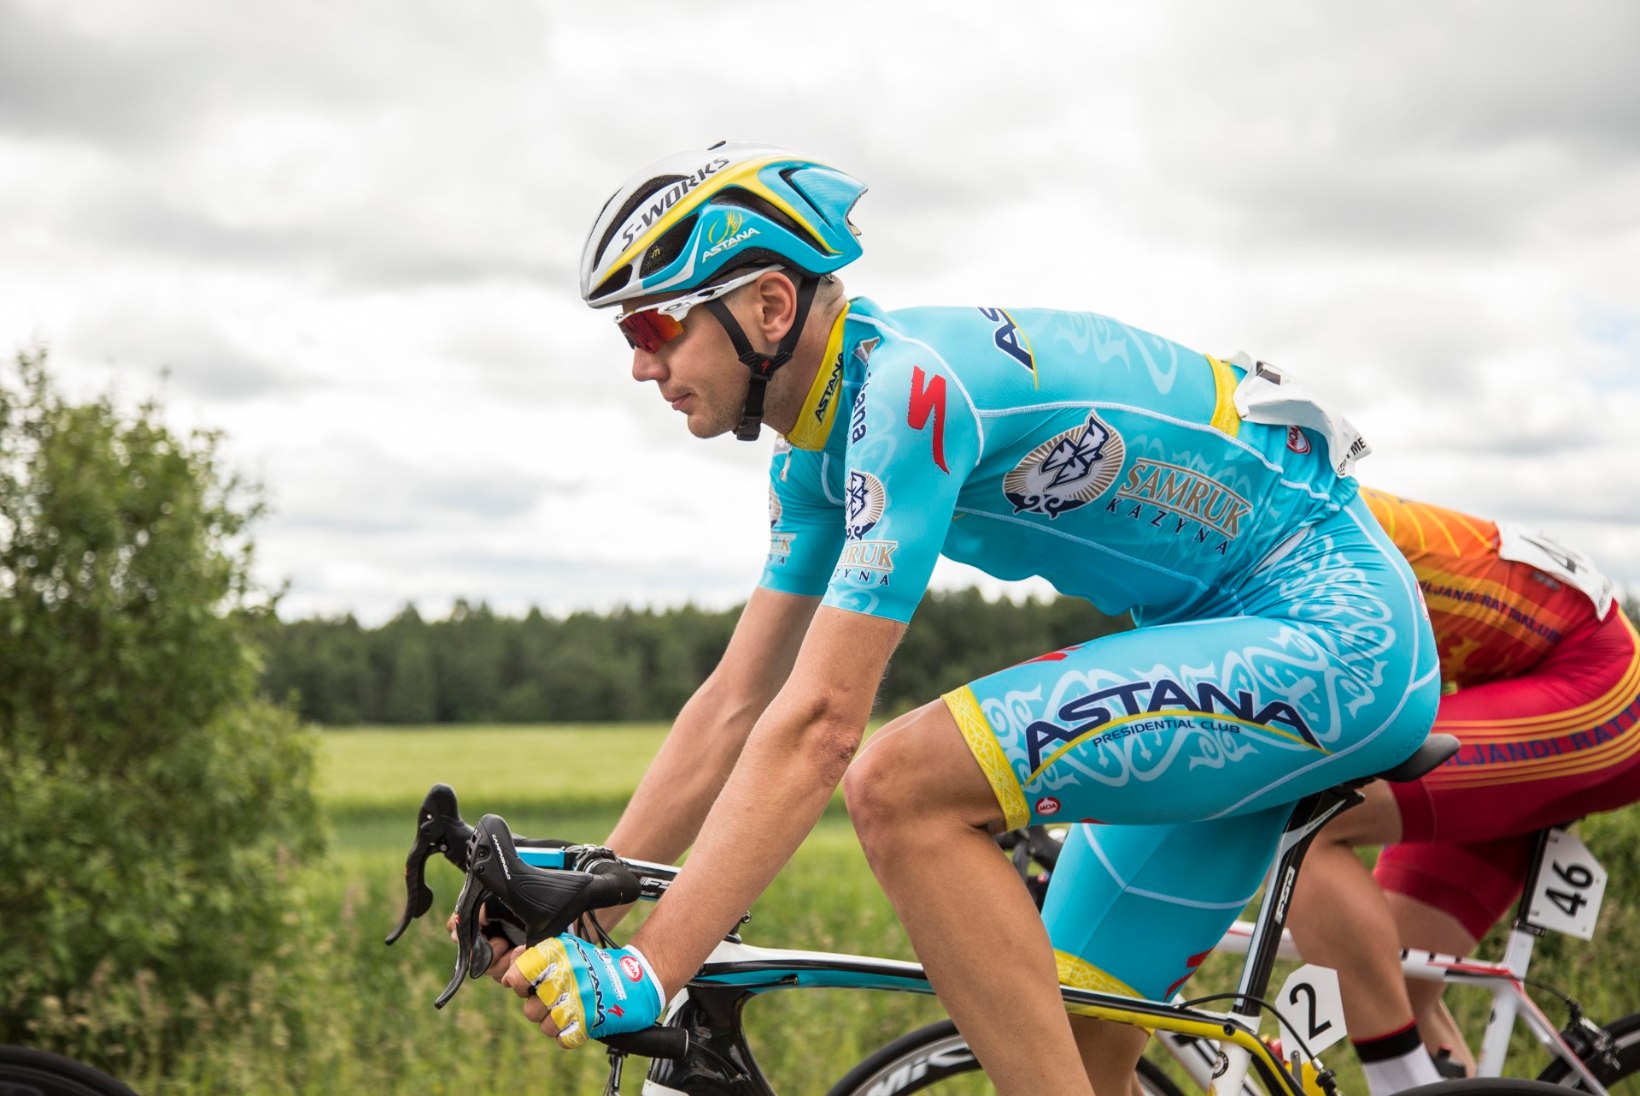 Tour de France'i 11. etapp: Taaramäe katkestas, Kangerti hea tulemus läks väsinud Nibali nahka